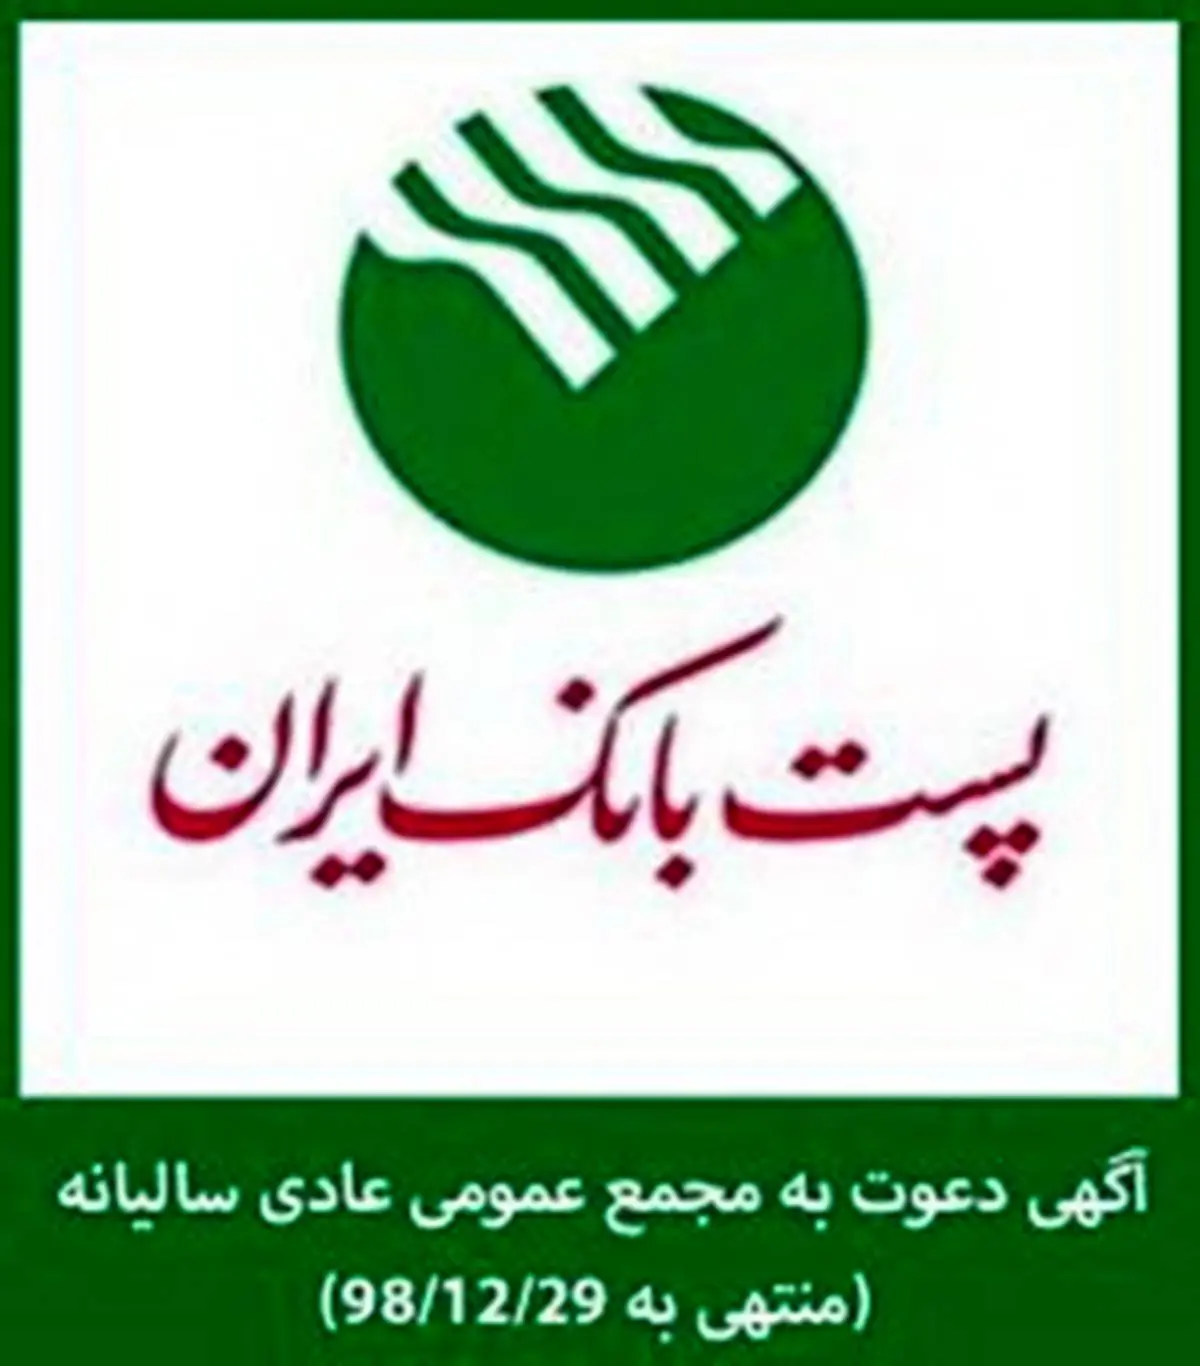 
برگزاری مجمع عمومی عادی سالیانه پست بانک ایران در25تیرماه سال جاری